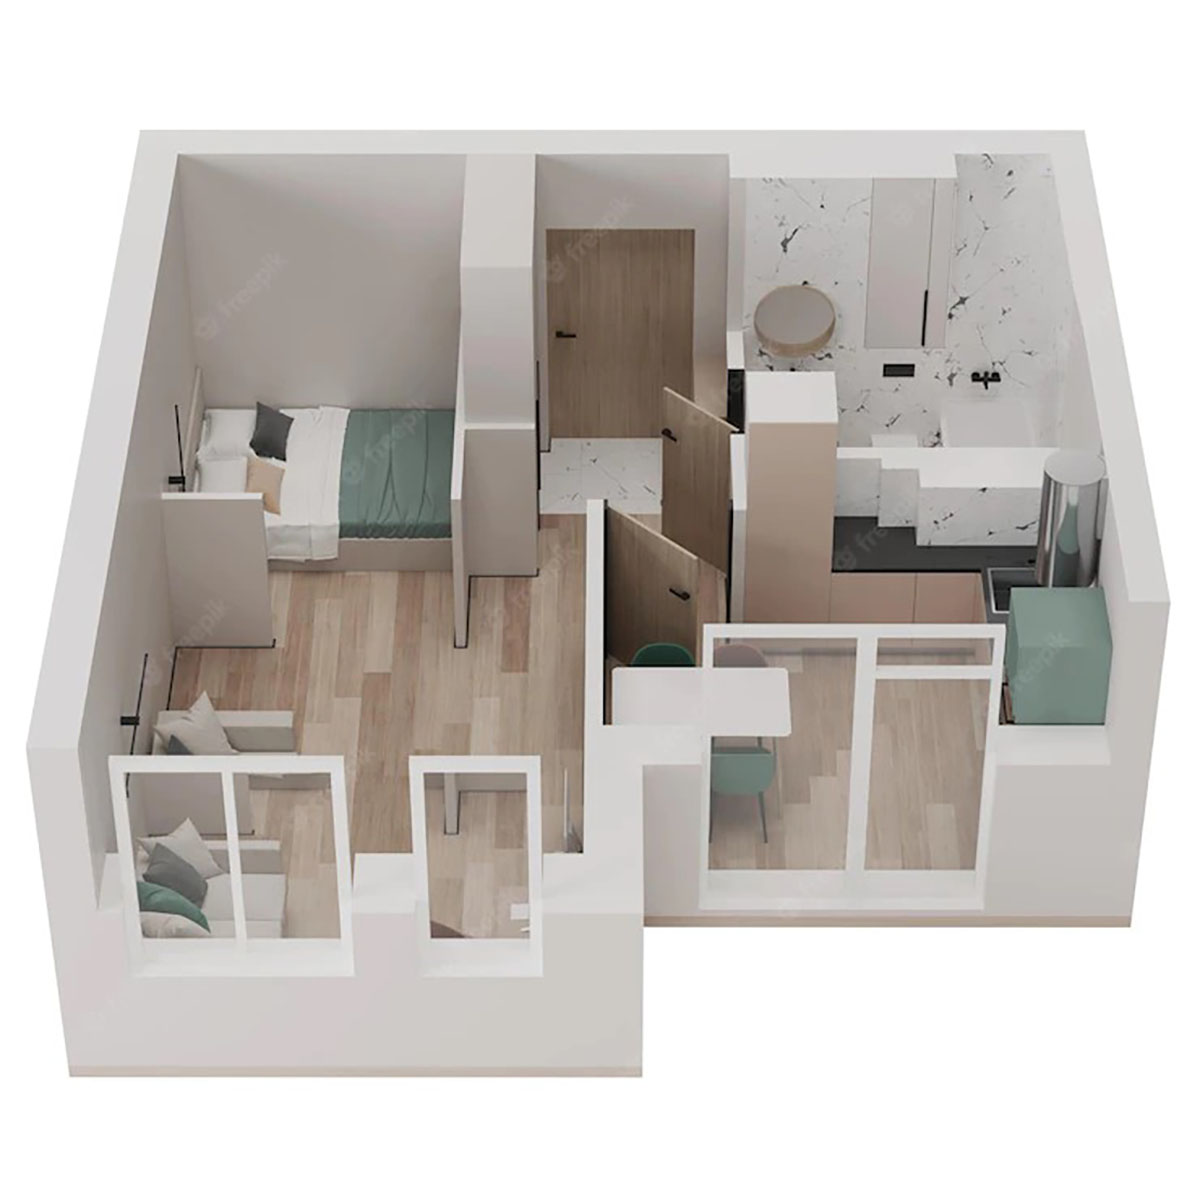 Bố trí mặt bằng căn hộ hợp lý để thiết kế nội thất được dễ dàng. Nguồn ảnh: Freepik